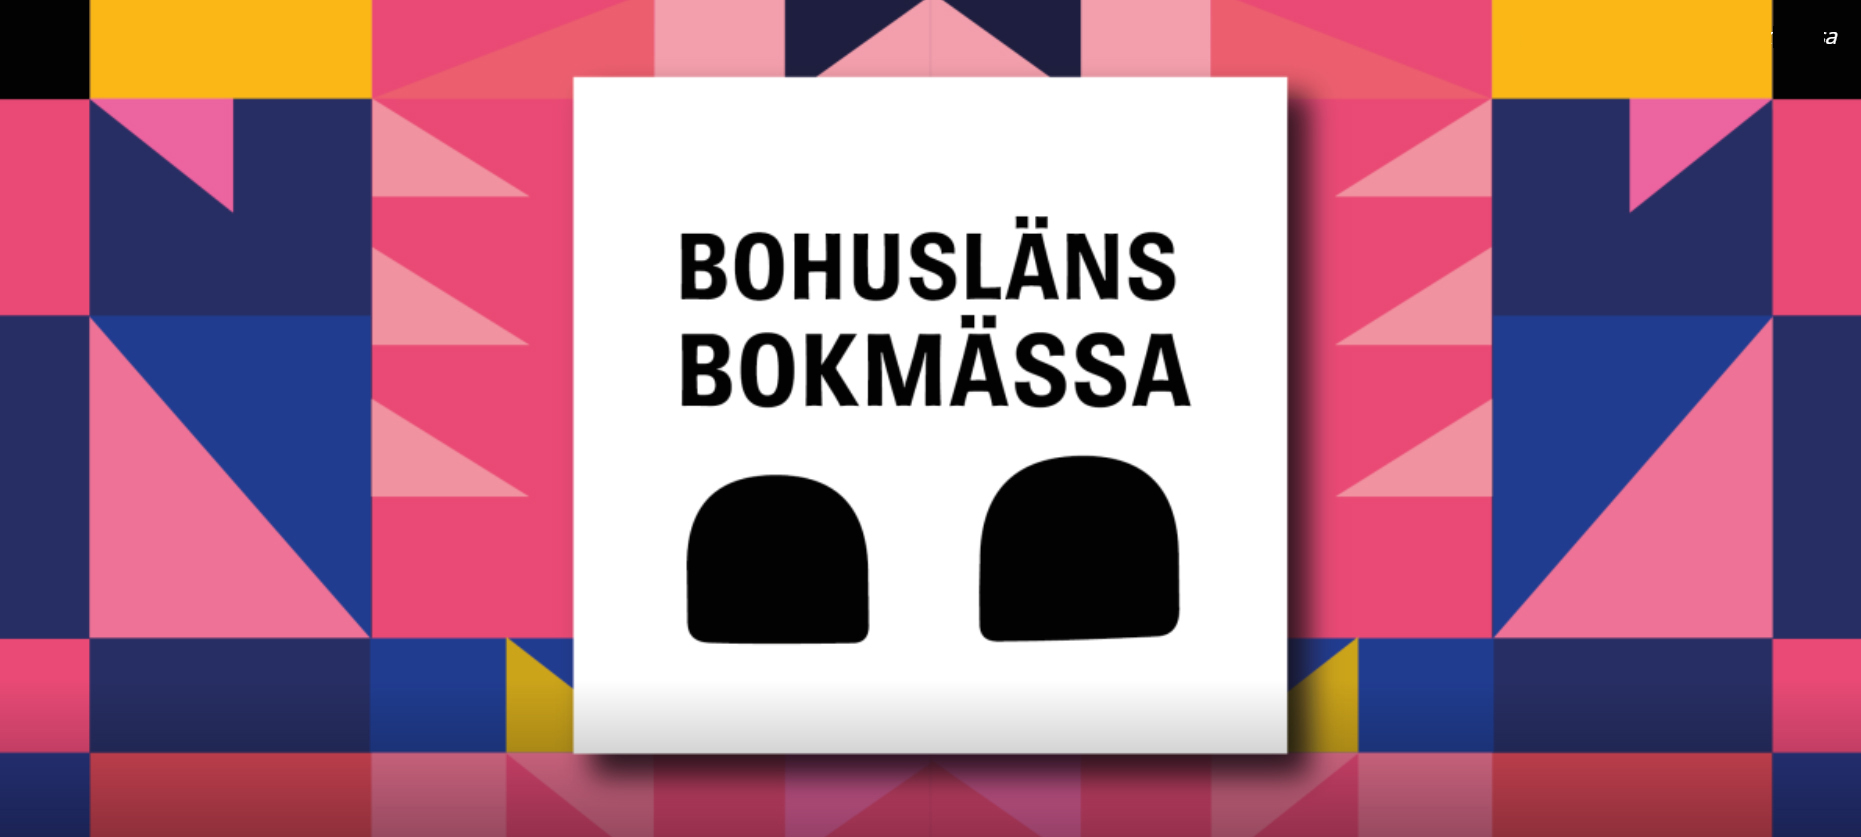 På Världsbokdagen arrangeras för första gången Bohusläns Bokmässa